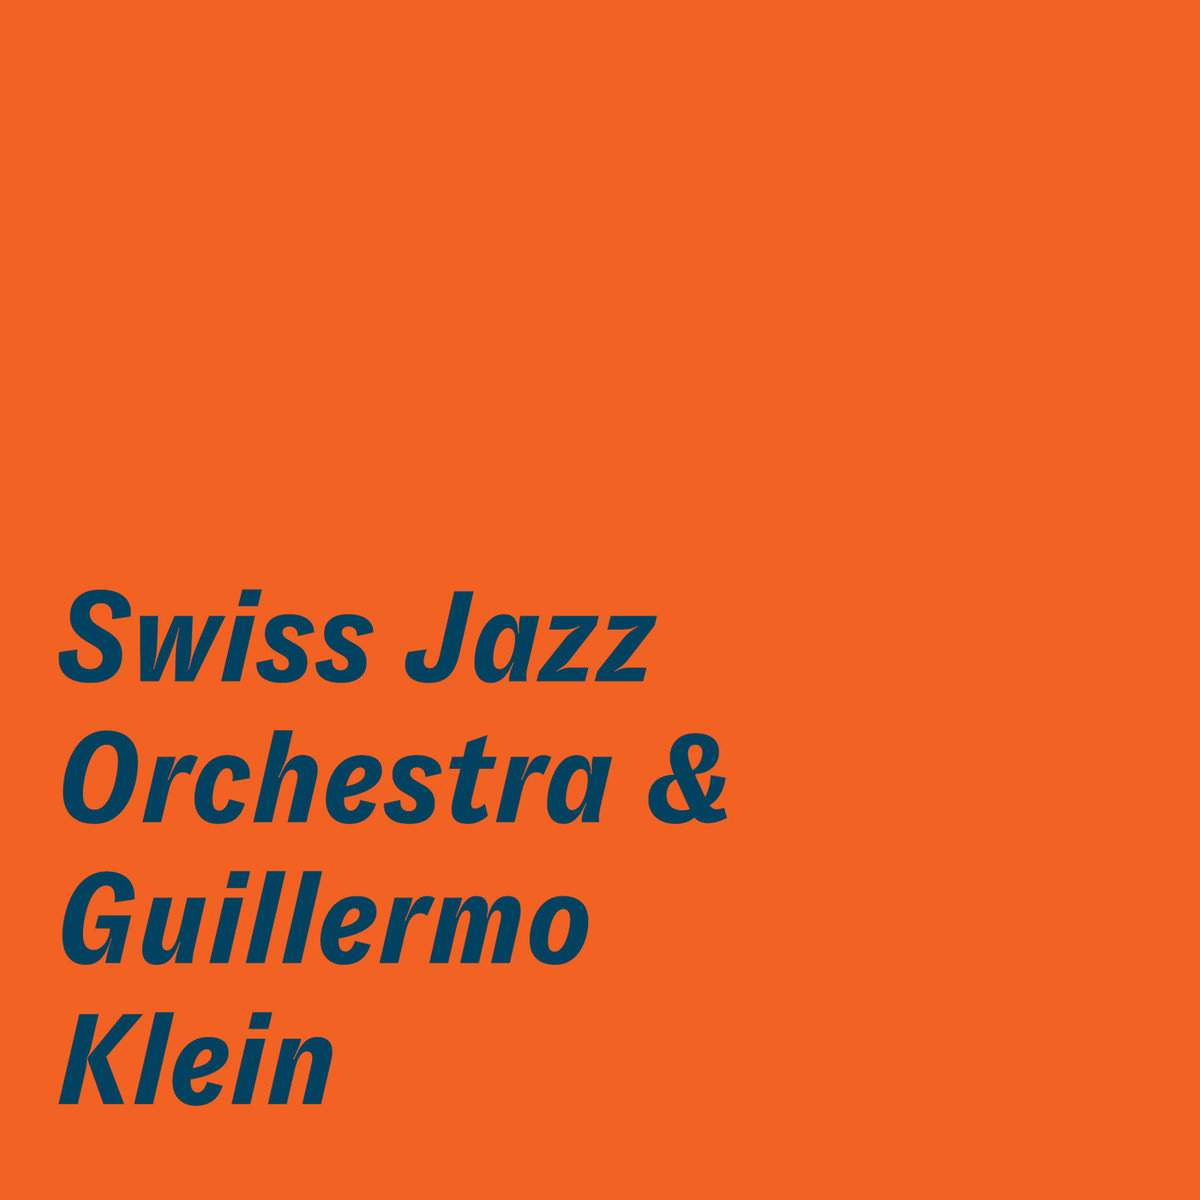 Swiss Jazz Orchestra - Swiss Jazz Orchestra & Guillermo Klein (2019) [FLAC 24bit/96kHz]